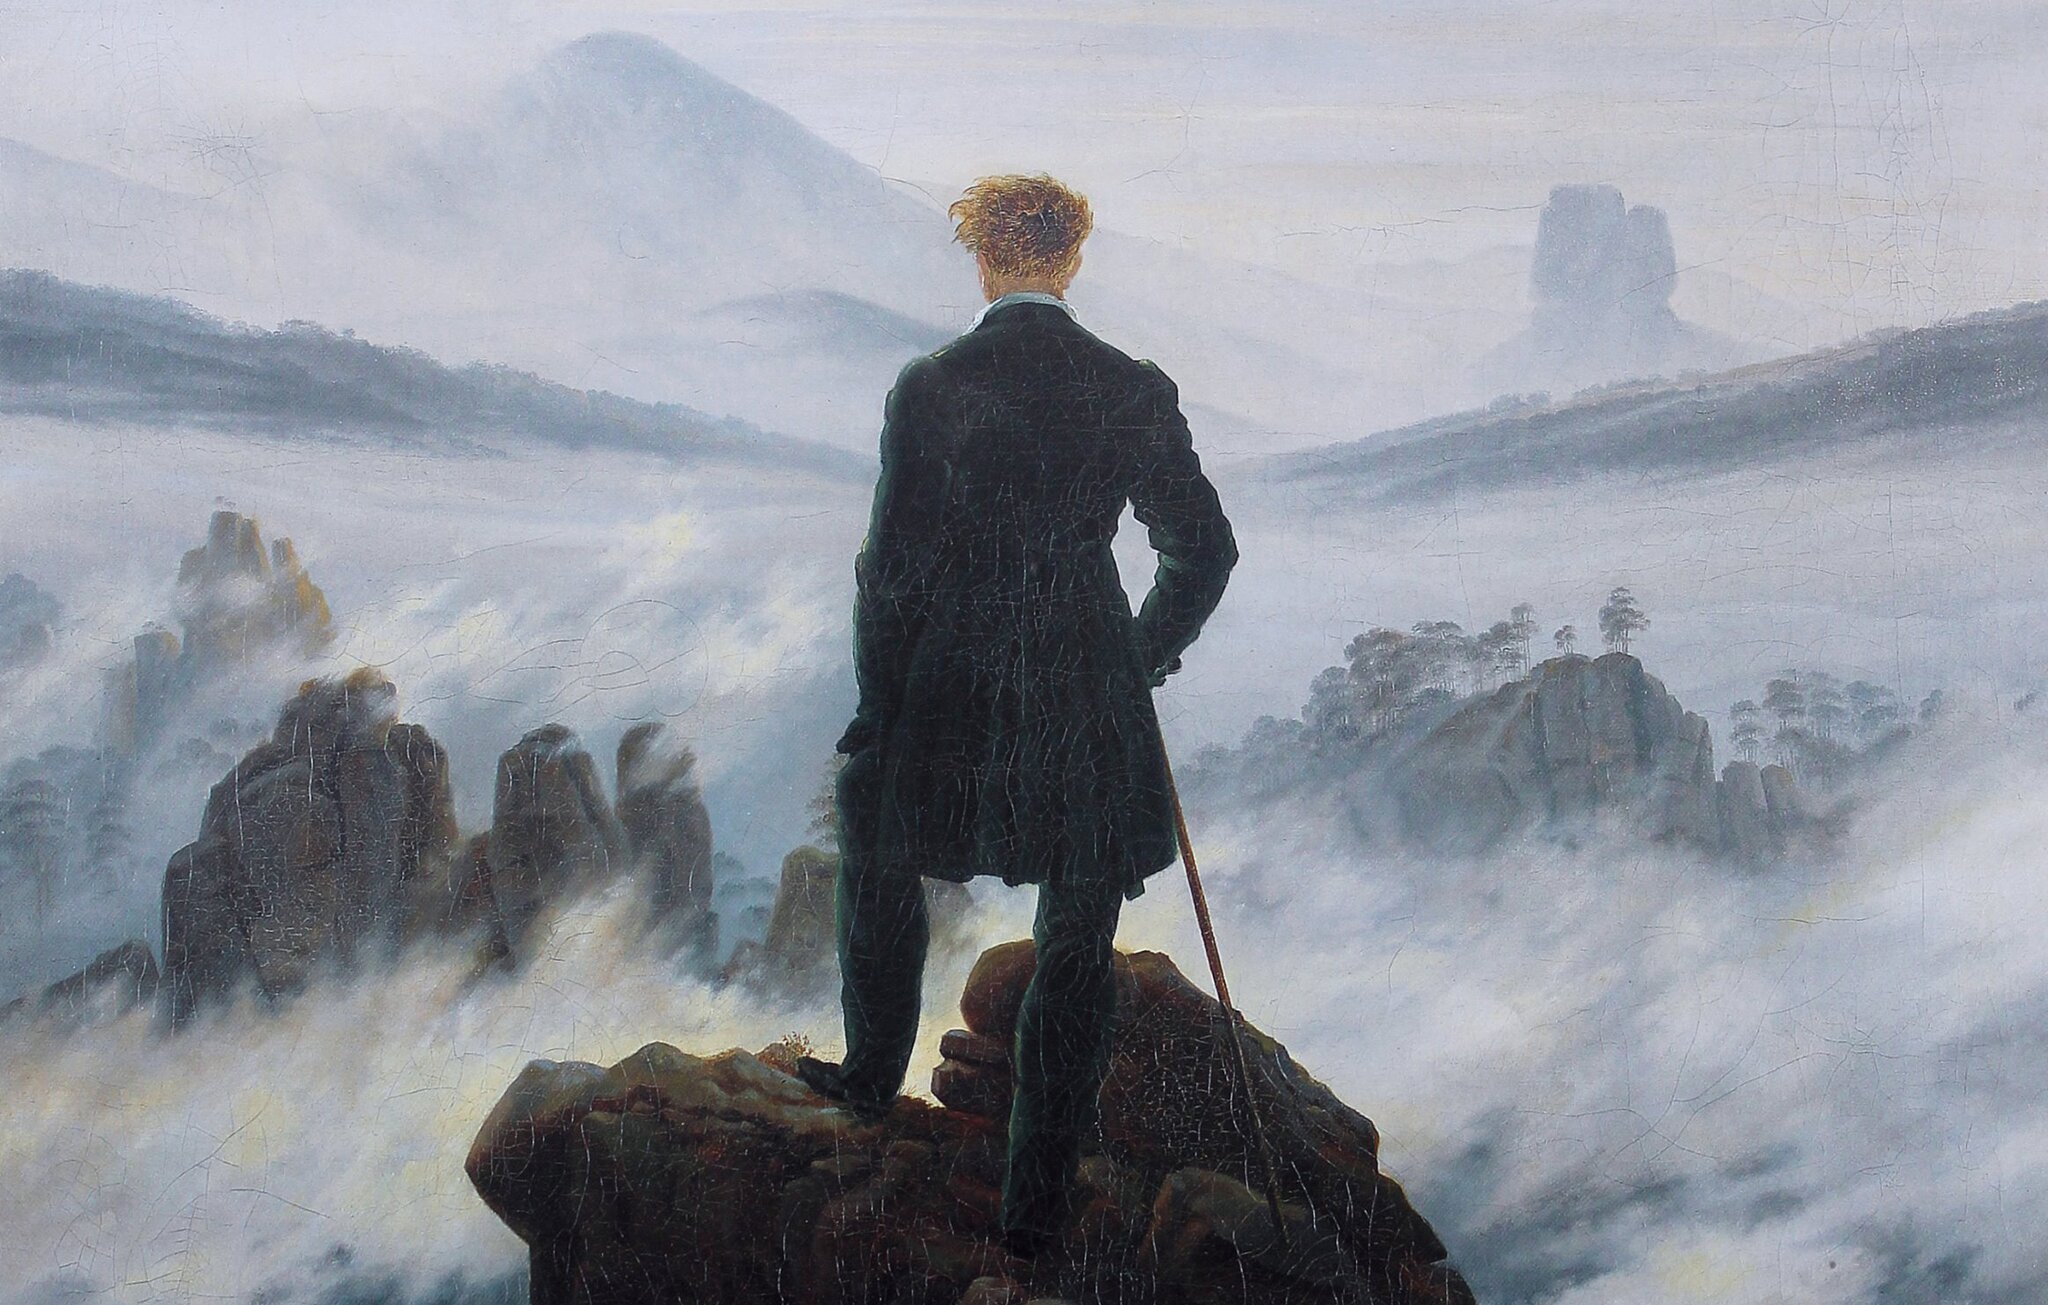 Wędrowiec nad morzem mgły [fragment] Źródło: Caspar David Friedrich, Wędrowiec nad morzem mgły [fragment], 1818, olej na płótnie, Hamburger Kunsthalle, Niemcy, domena publiczna.